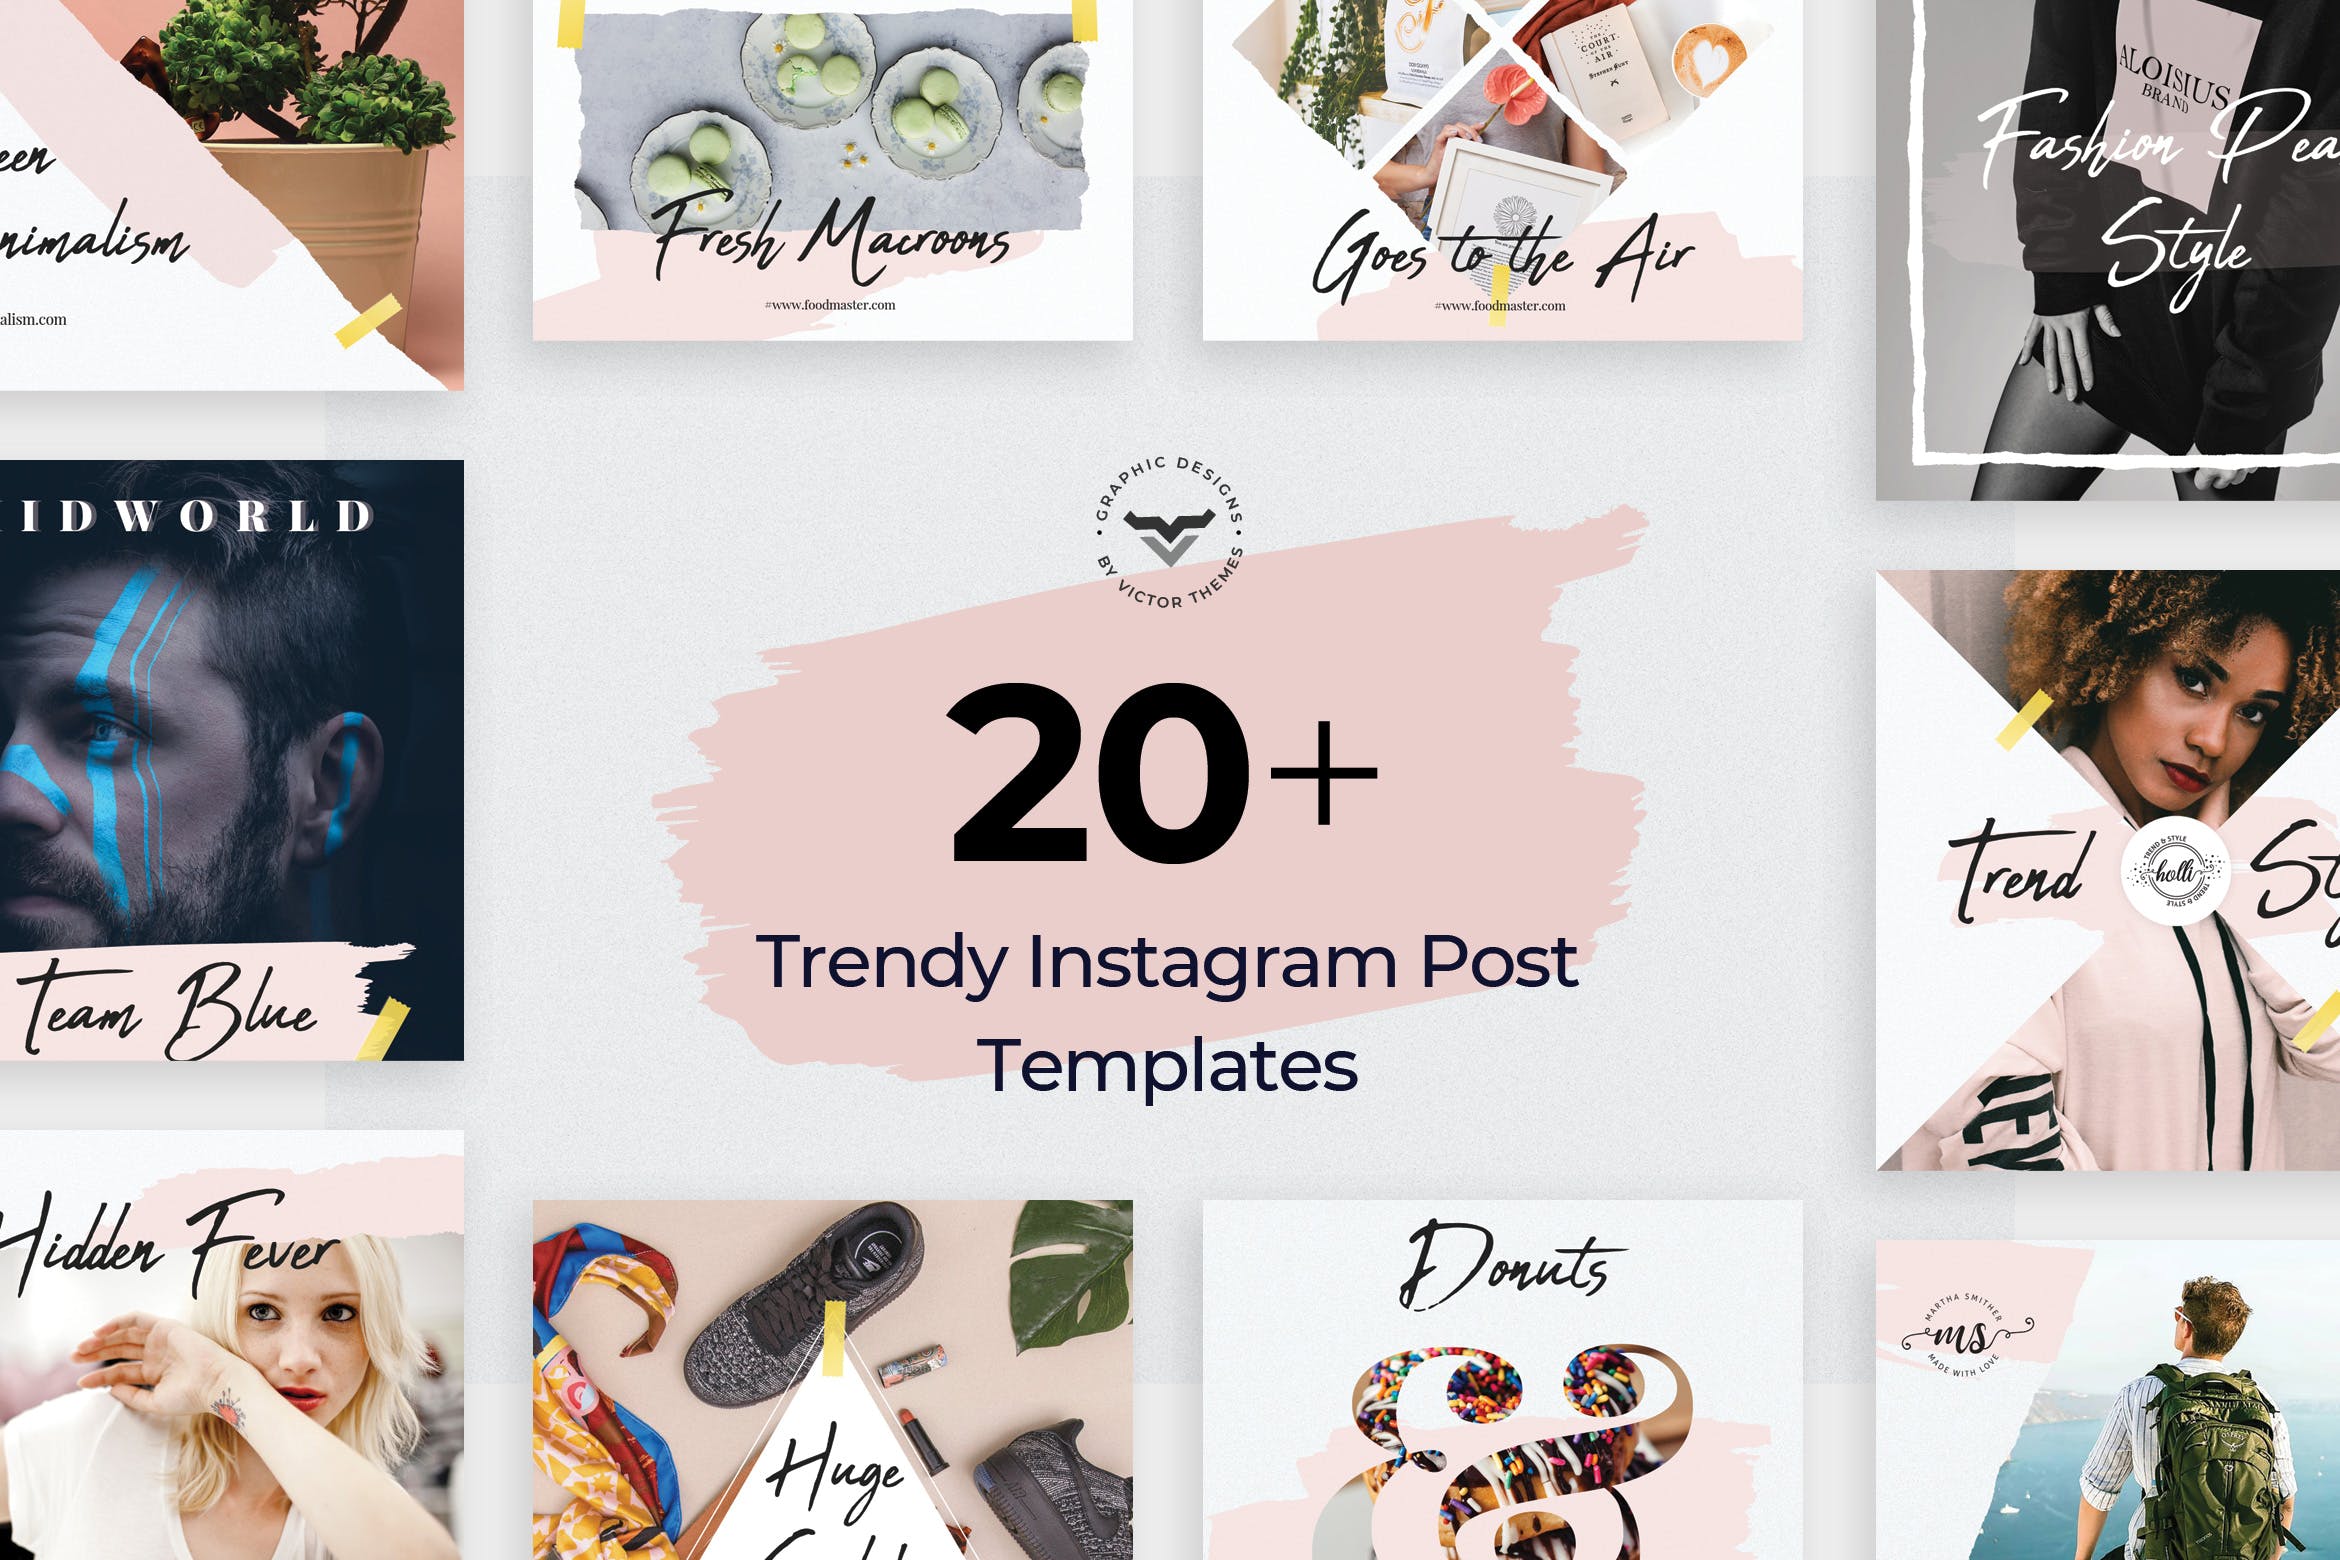 20+创意便利贴设计风格Instagram社交贴图模板素材库精选 Instagram Post Templates插图